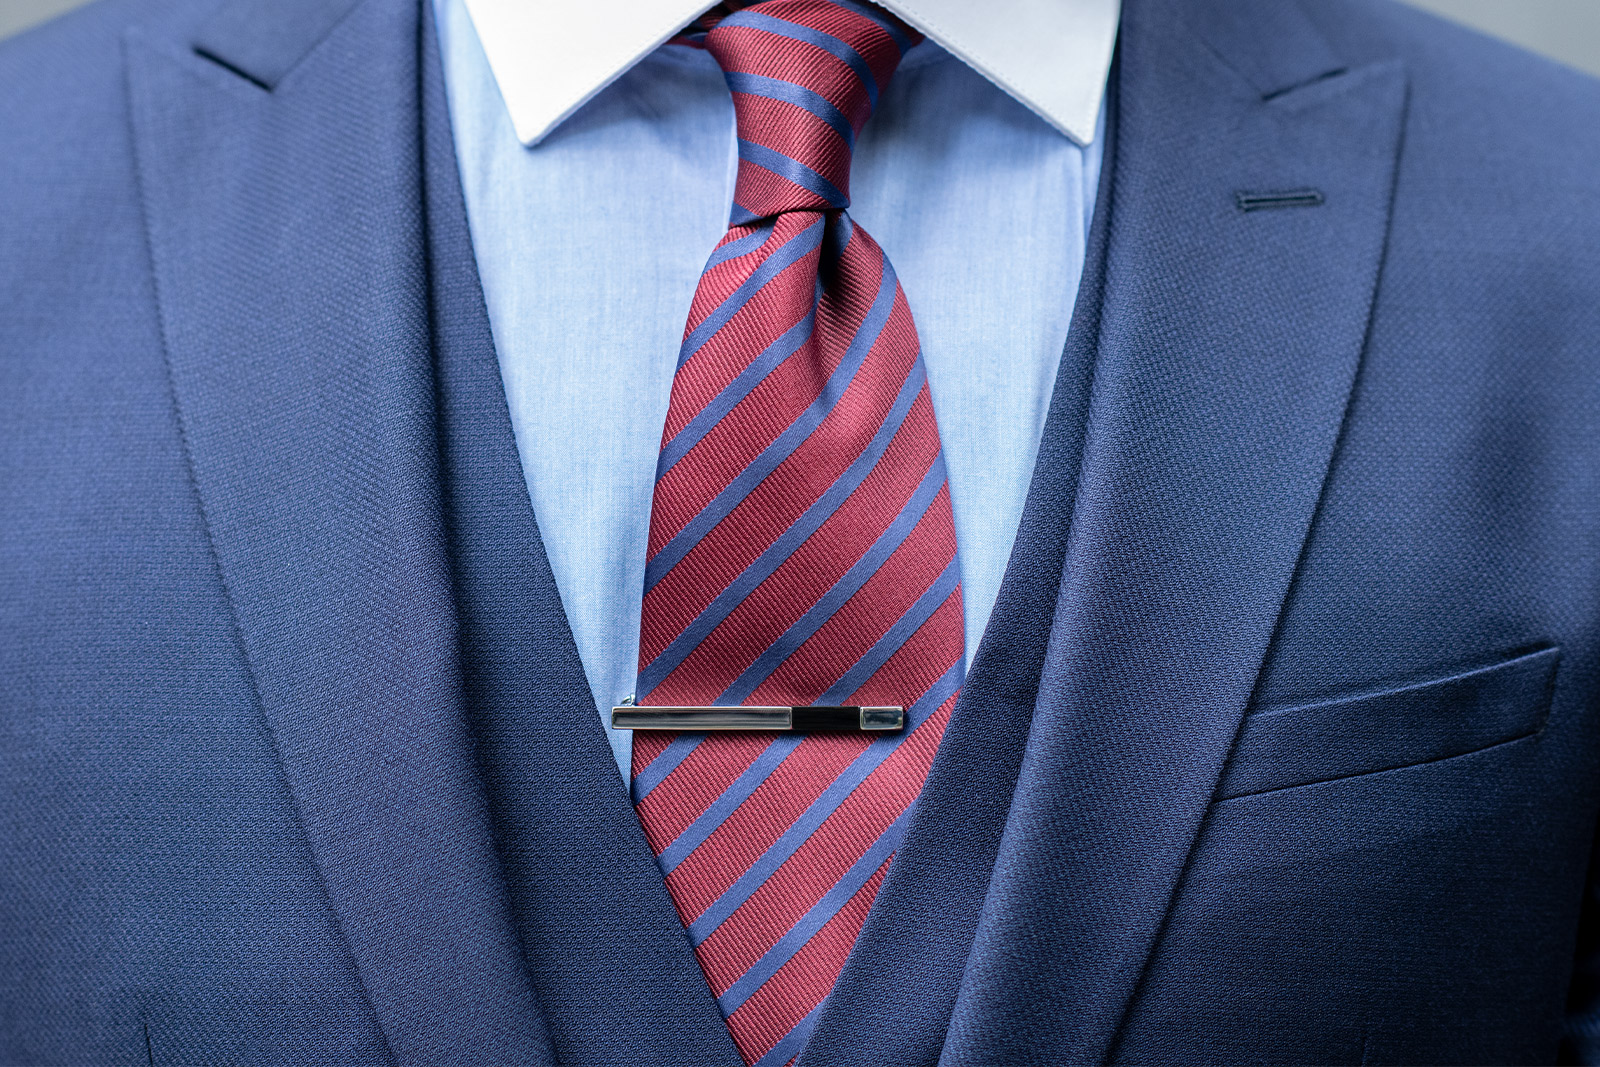 Kravatová spona na kravatě s diagonálními pruhy